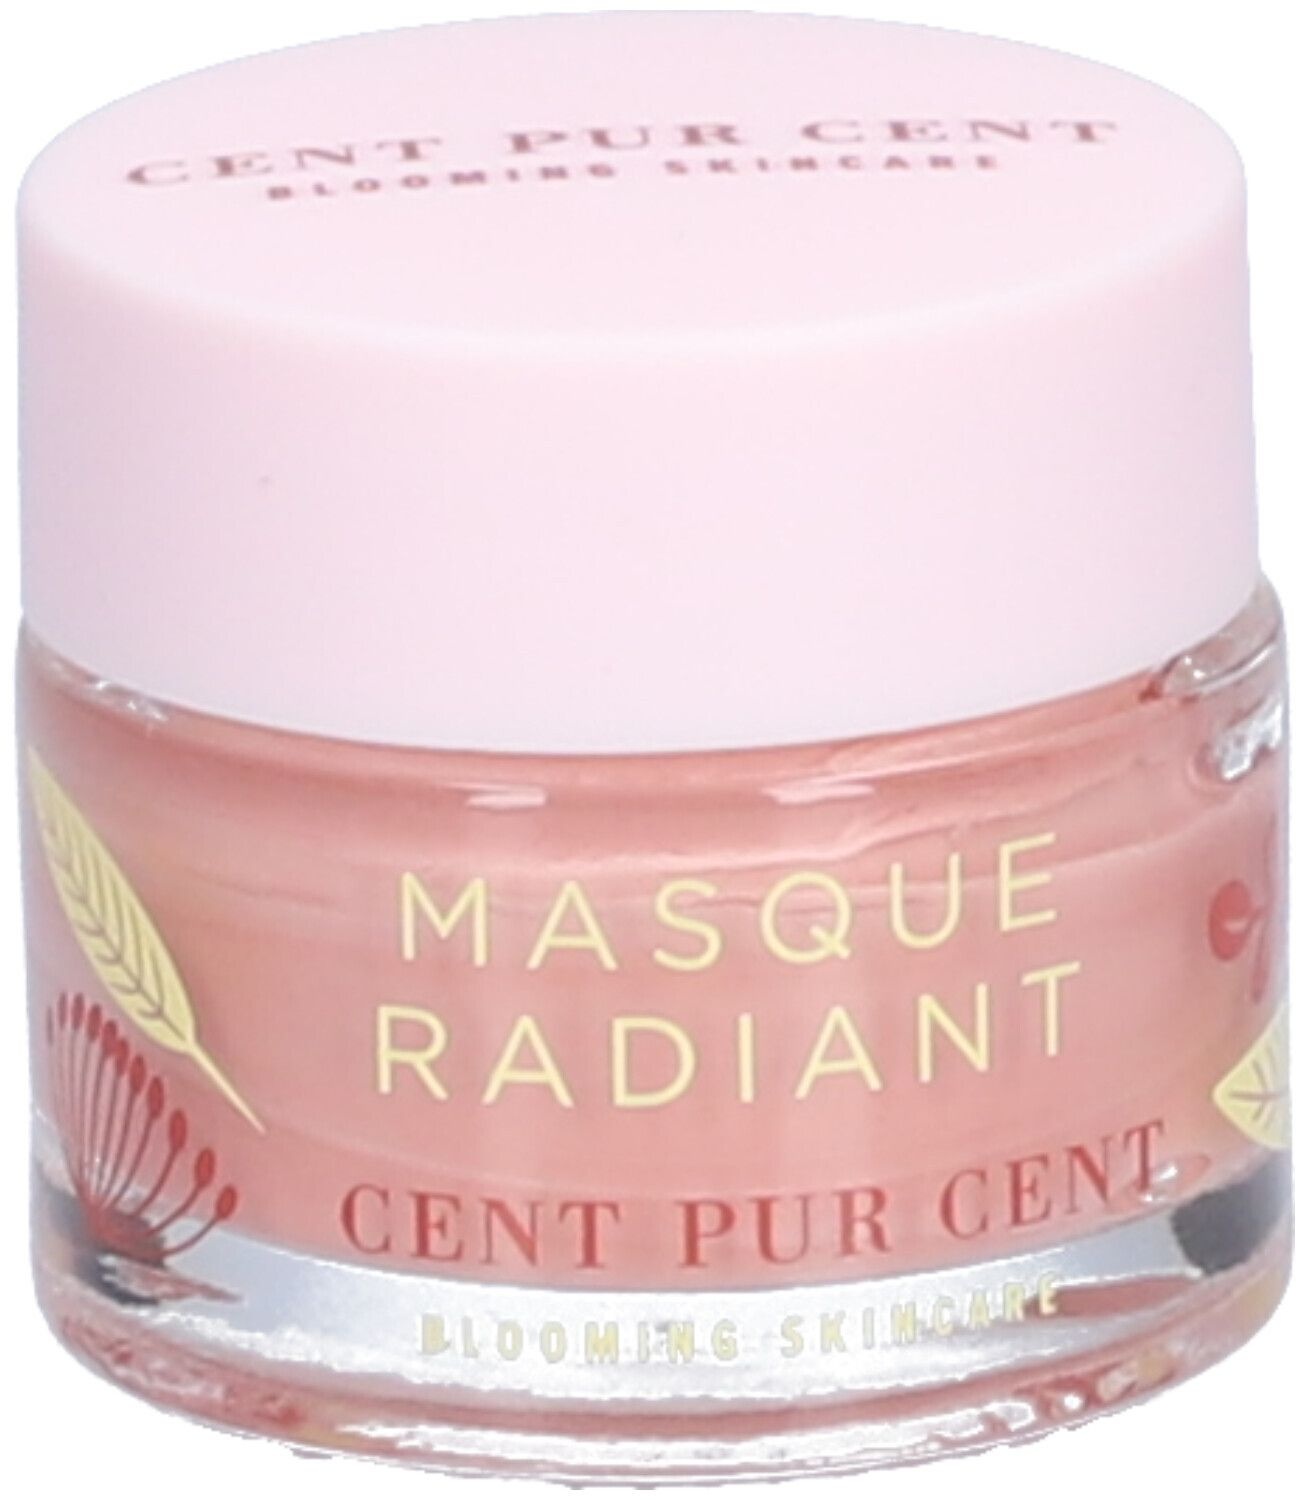 CENT PUR CENT Mini Masque Radiant - Masque d'argile rose 10 ml masque(s) pour le visage